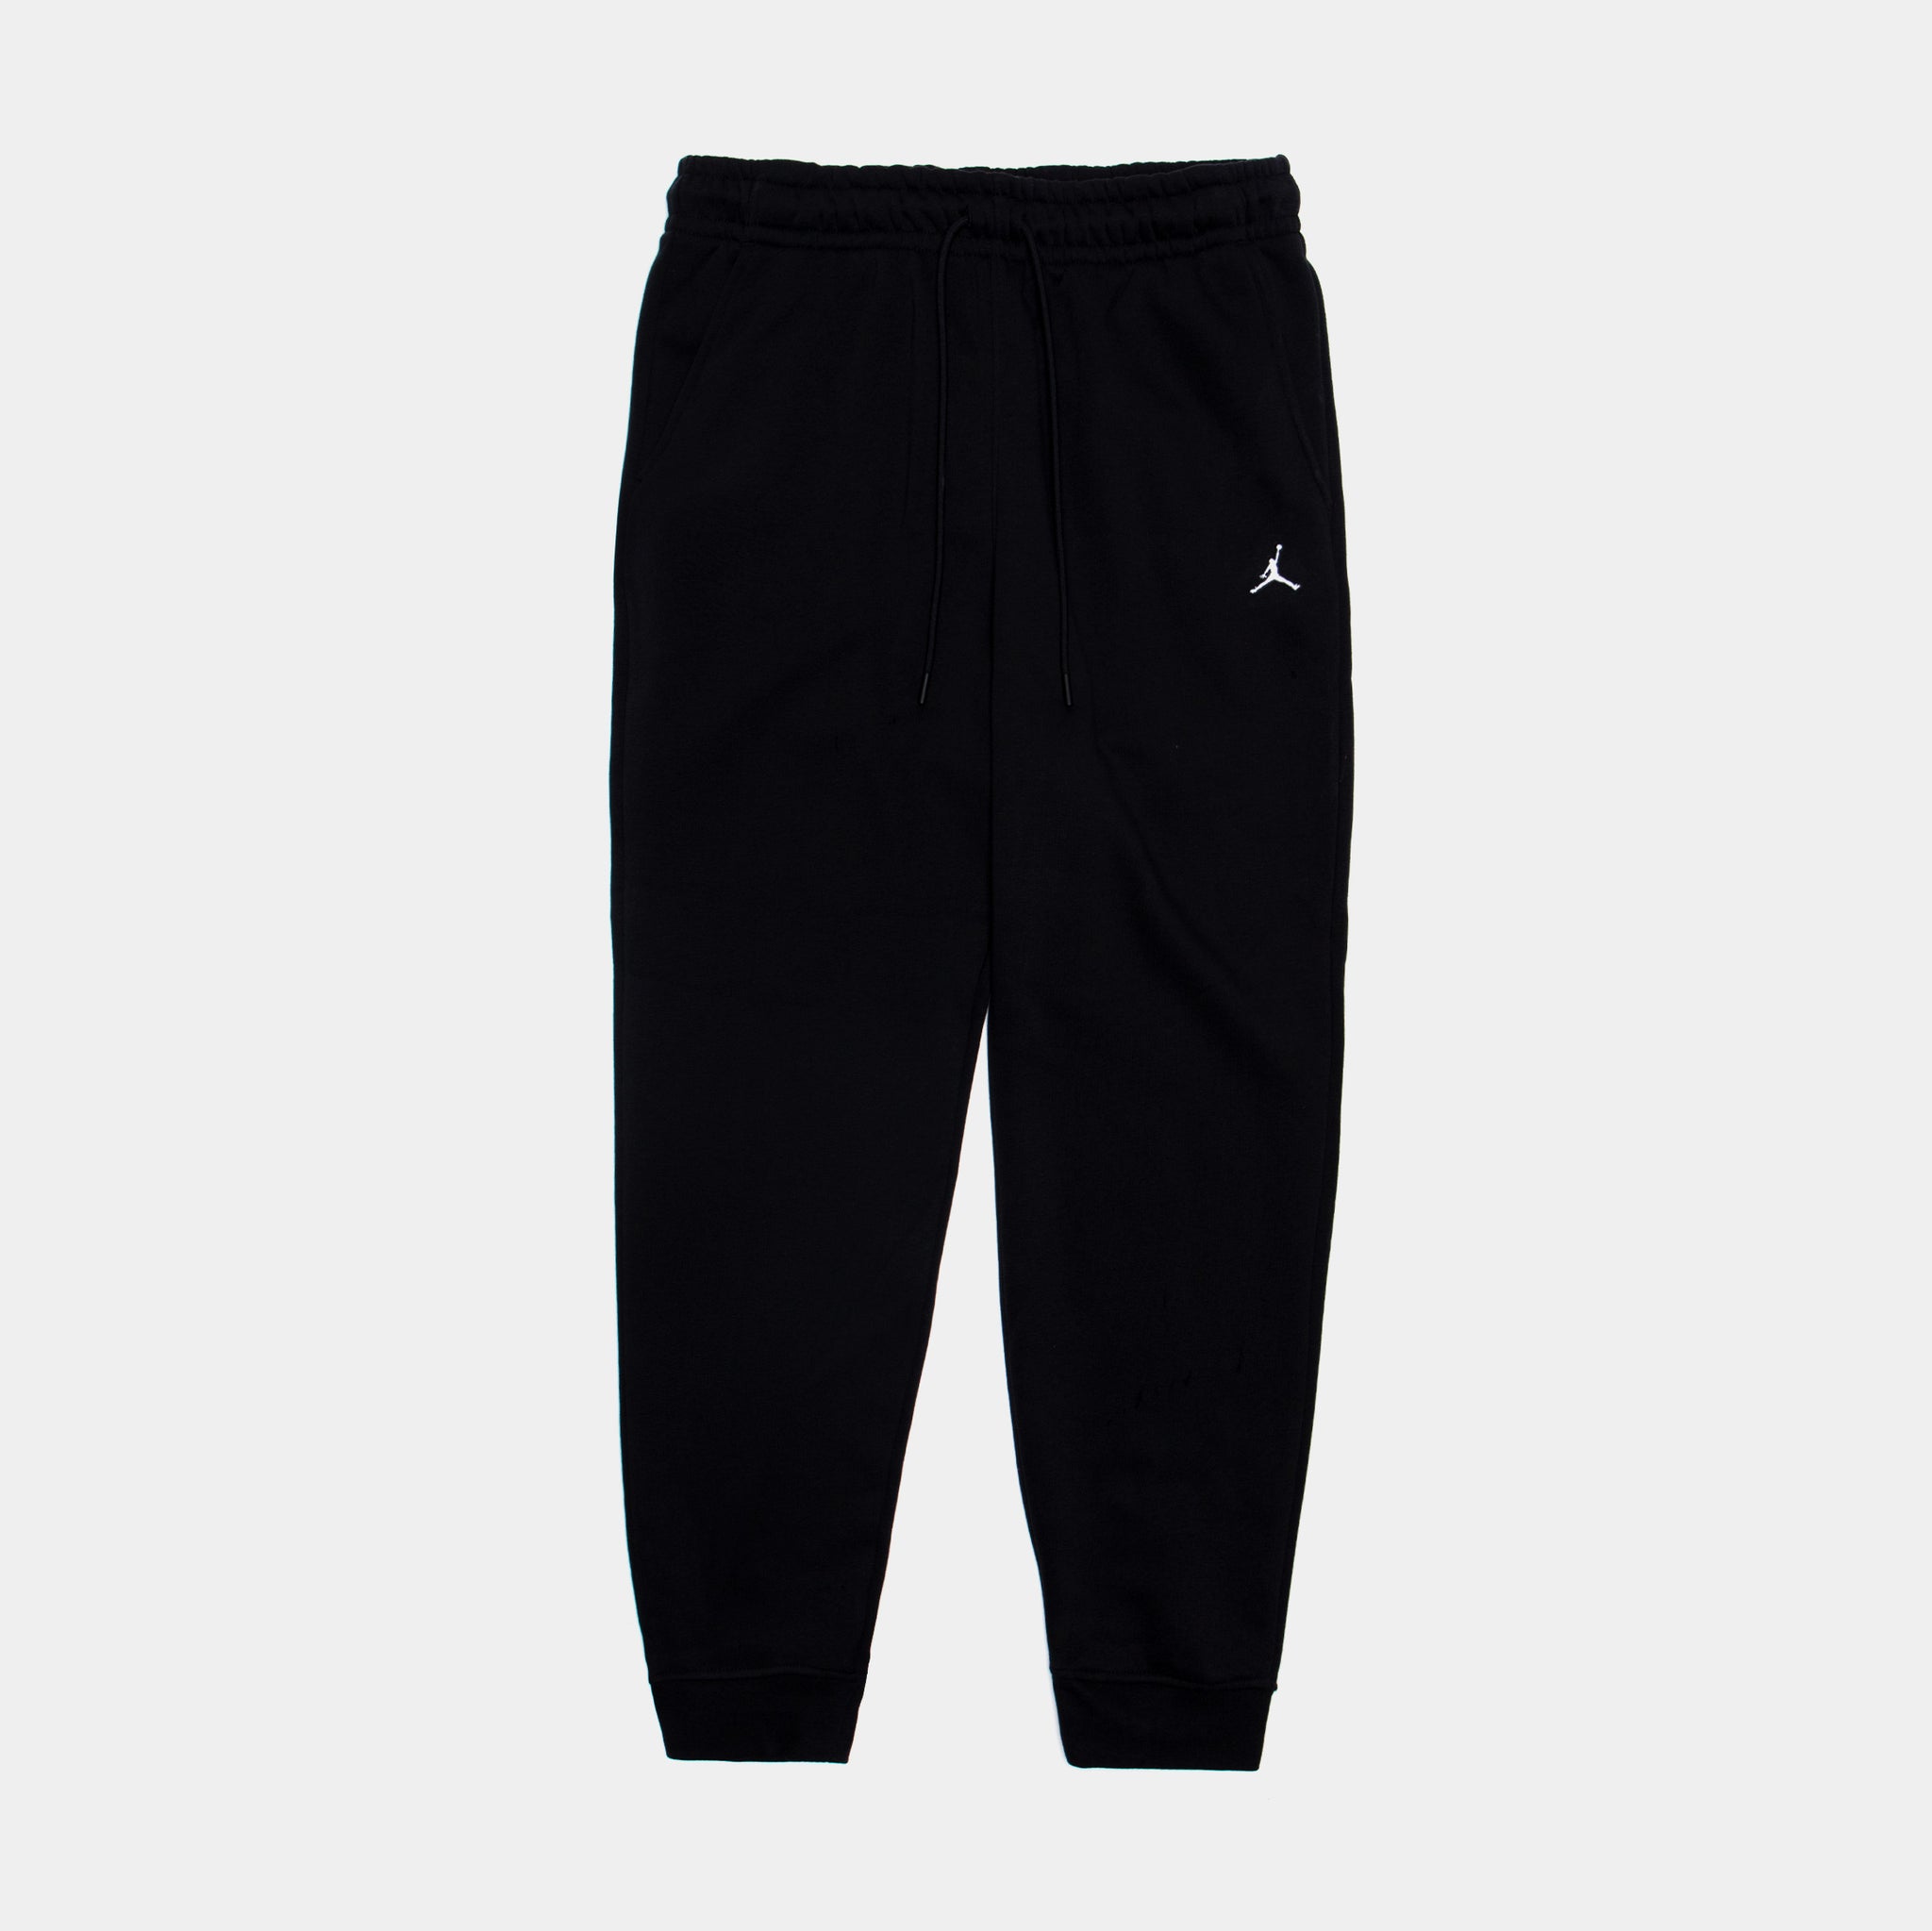 Essentials Fleece Pants Mens Pants (Black)